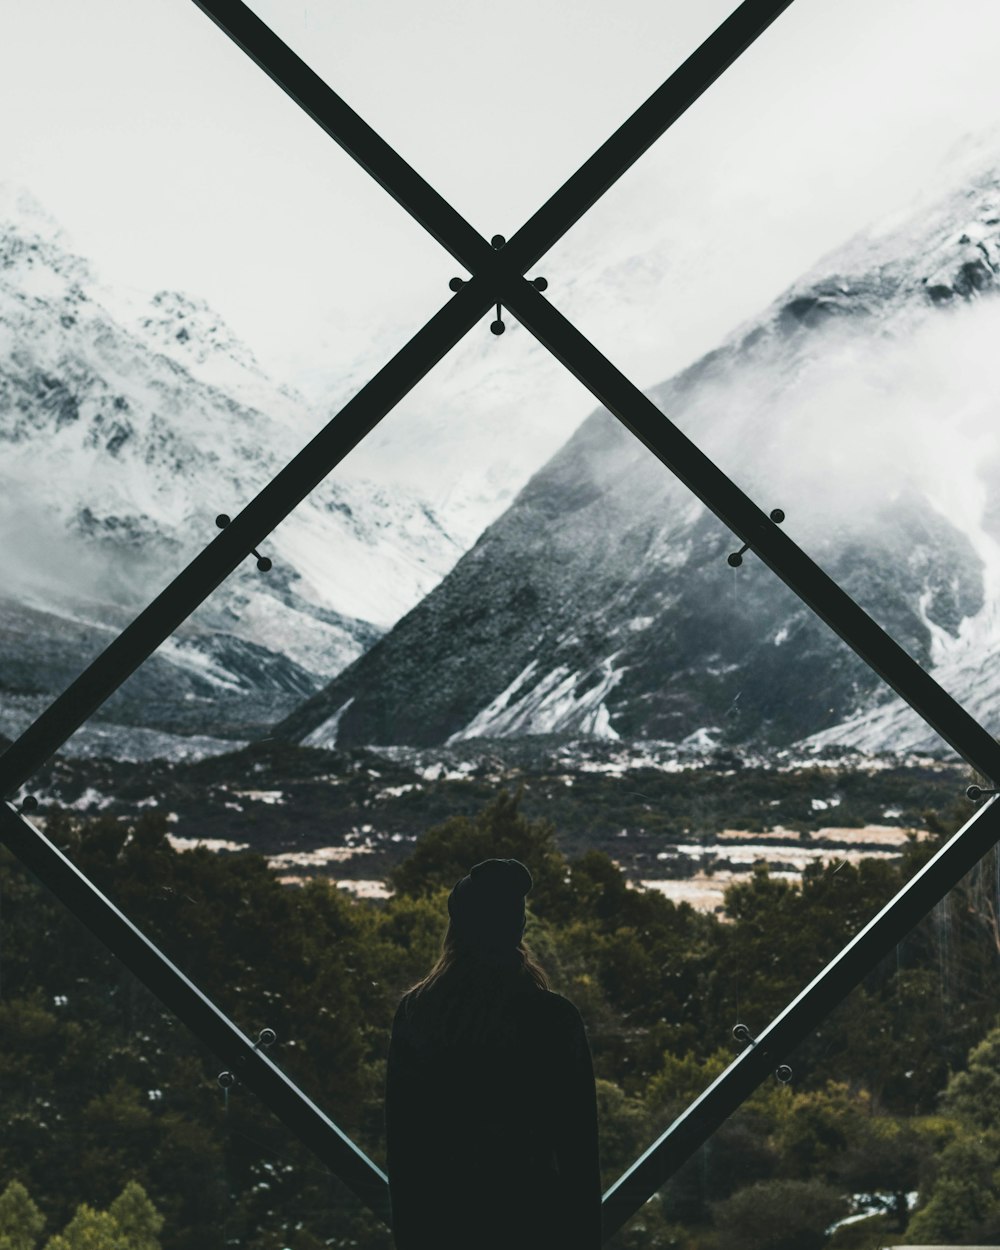 Persona in piedi sulla finestra macchiata che guarda attraverso la montagna coperta di neve